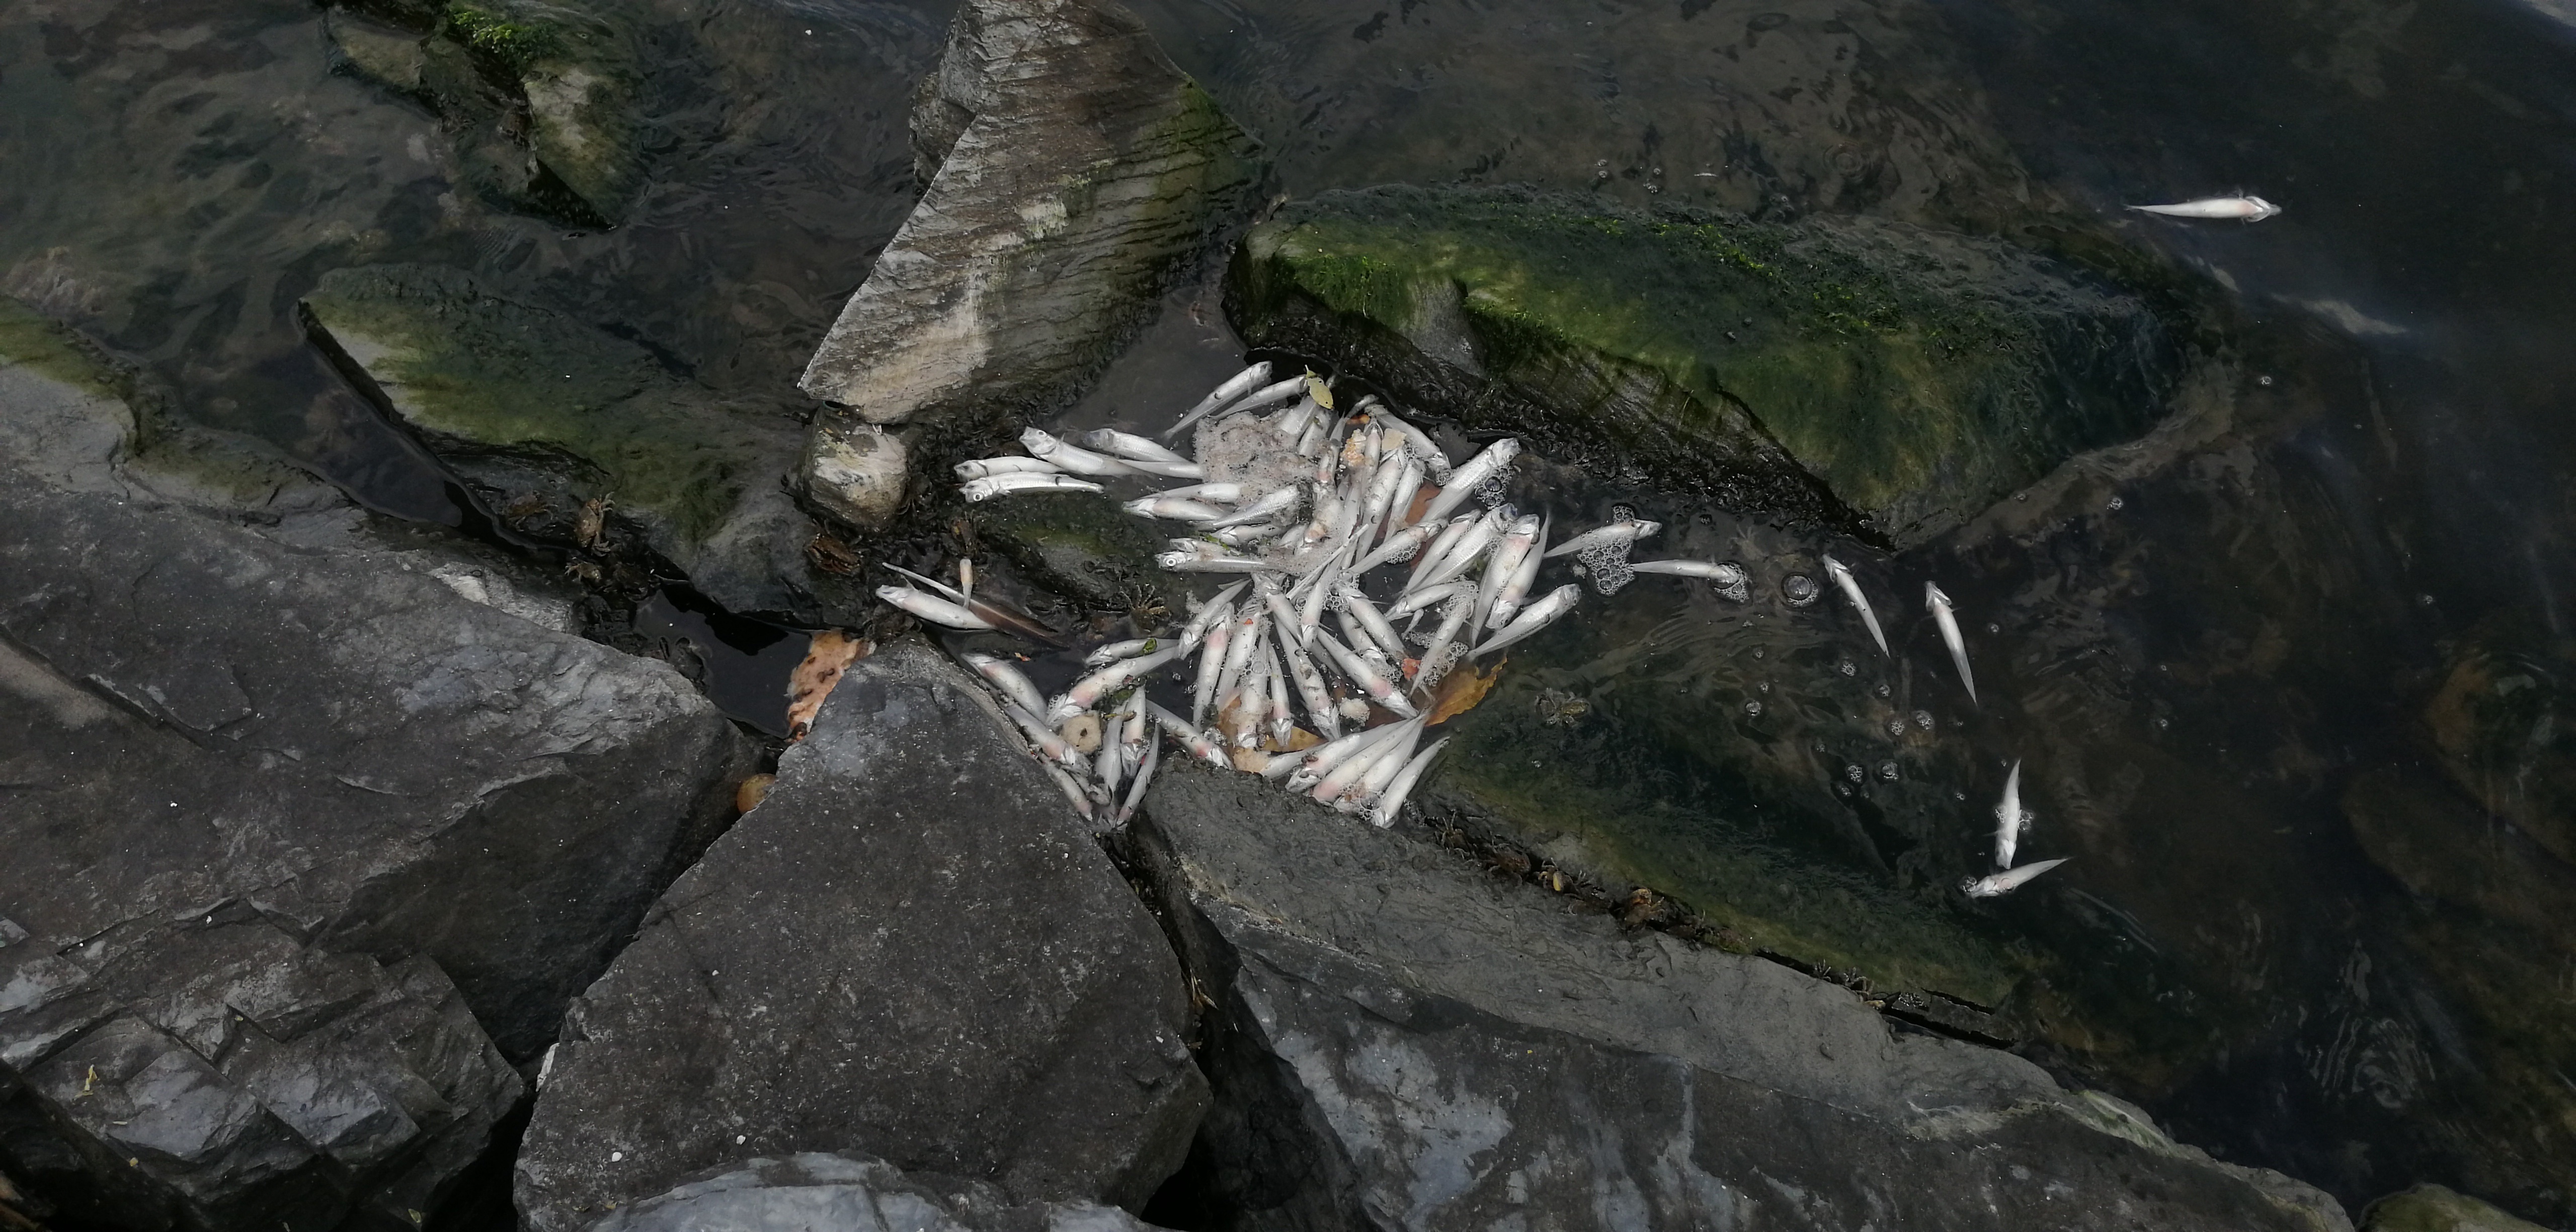 Küçükçekmece Gölü'nde tedirgin eden görüntü: Ölü balıklar kıyıya vurdu